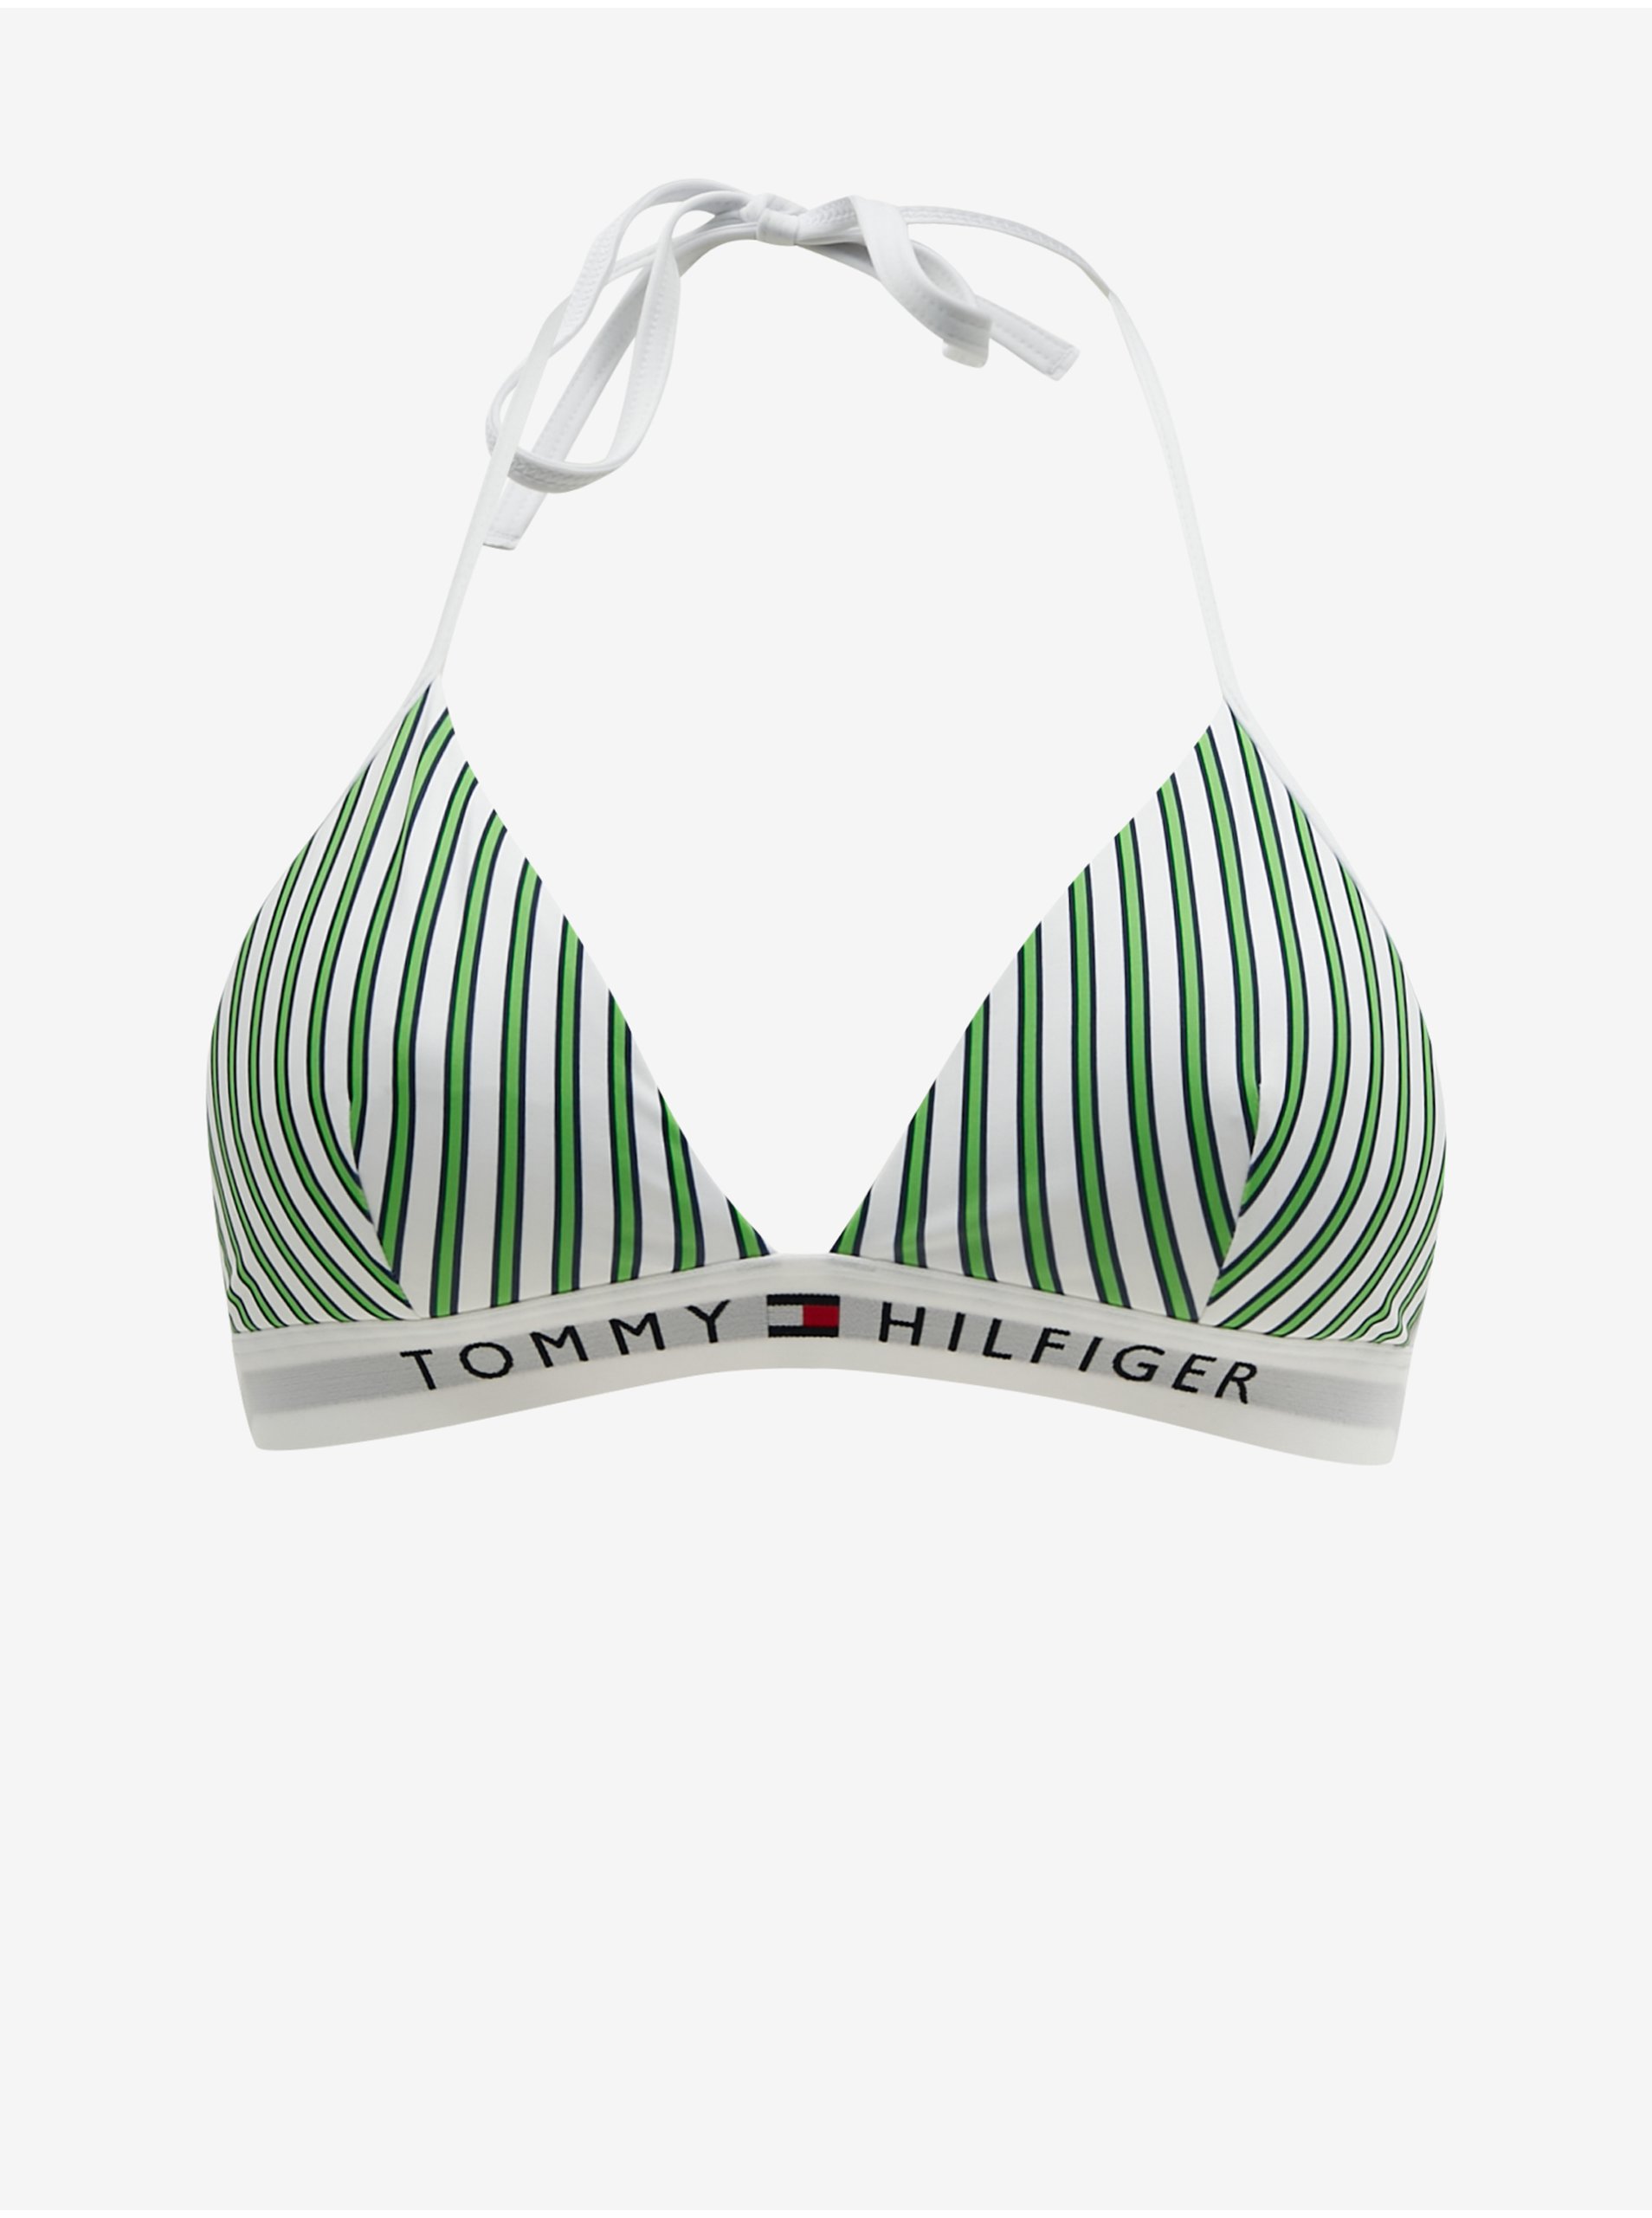 Lacno Bielo-zelený dámsky pruhovaný vrchný diel plaviek Tommy Hilfiger Underwear